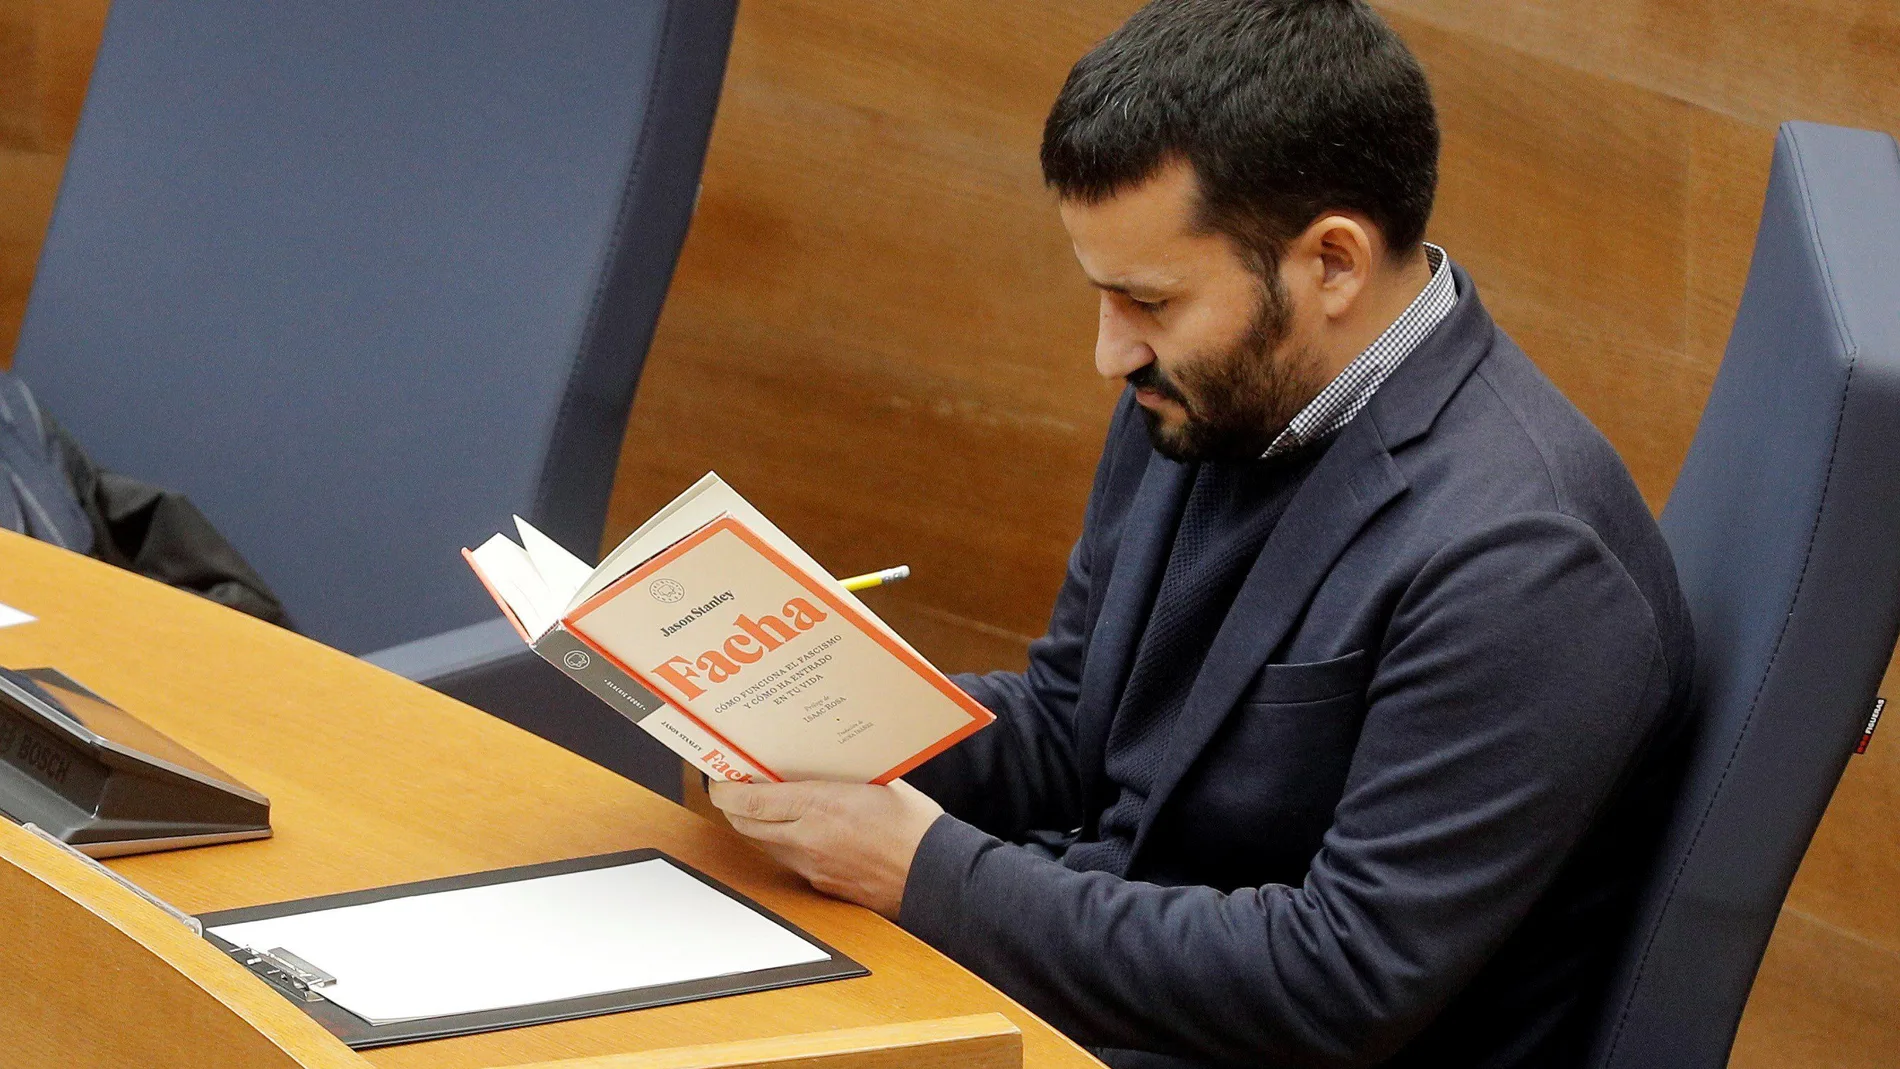 El conseller de Educación lee un libro durante la intervención del diputado de Vox, Jose María Llanos, en Les Corts el pasado 18 de noviembre